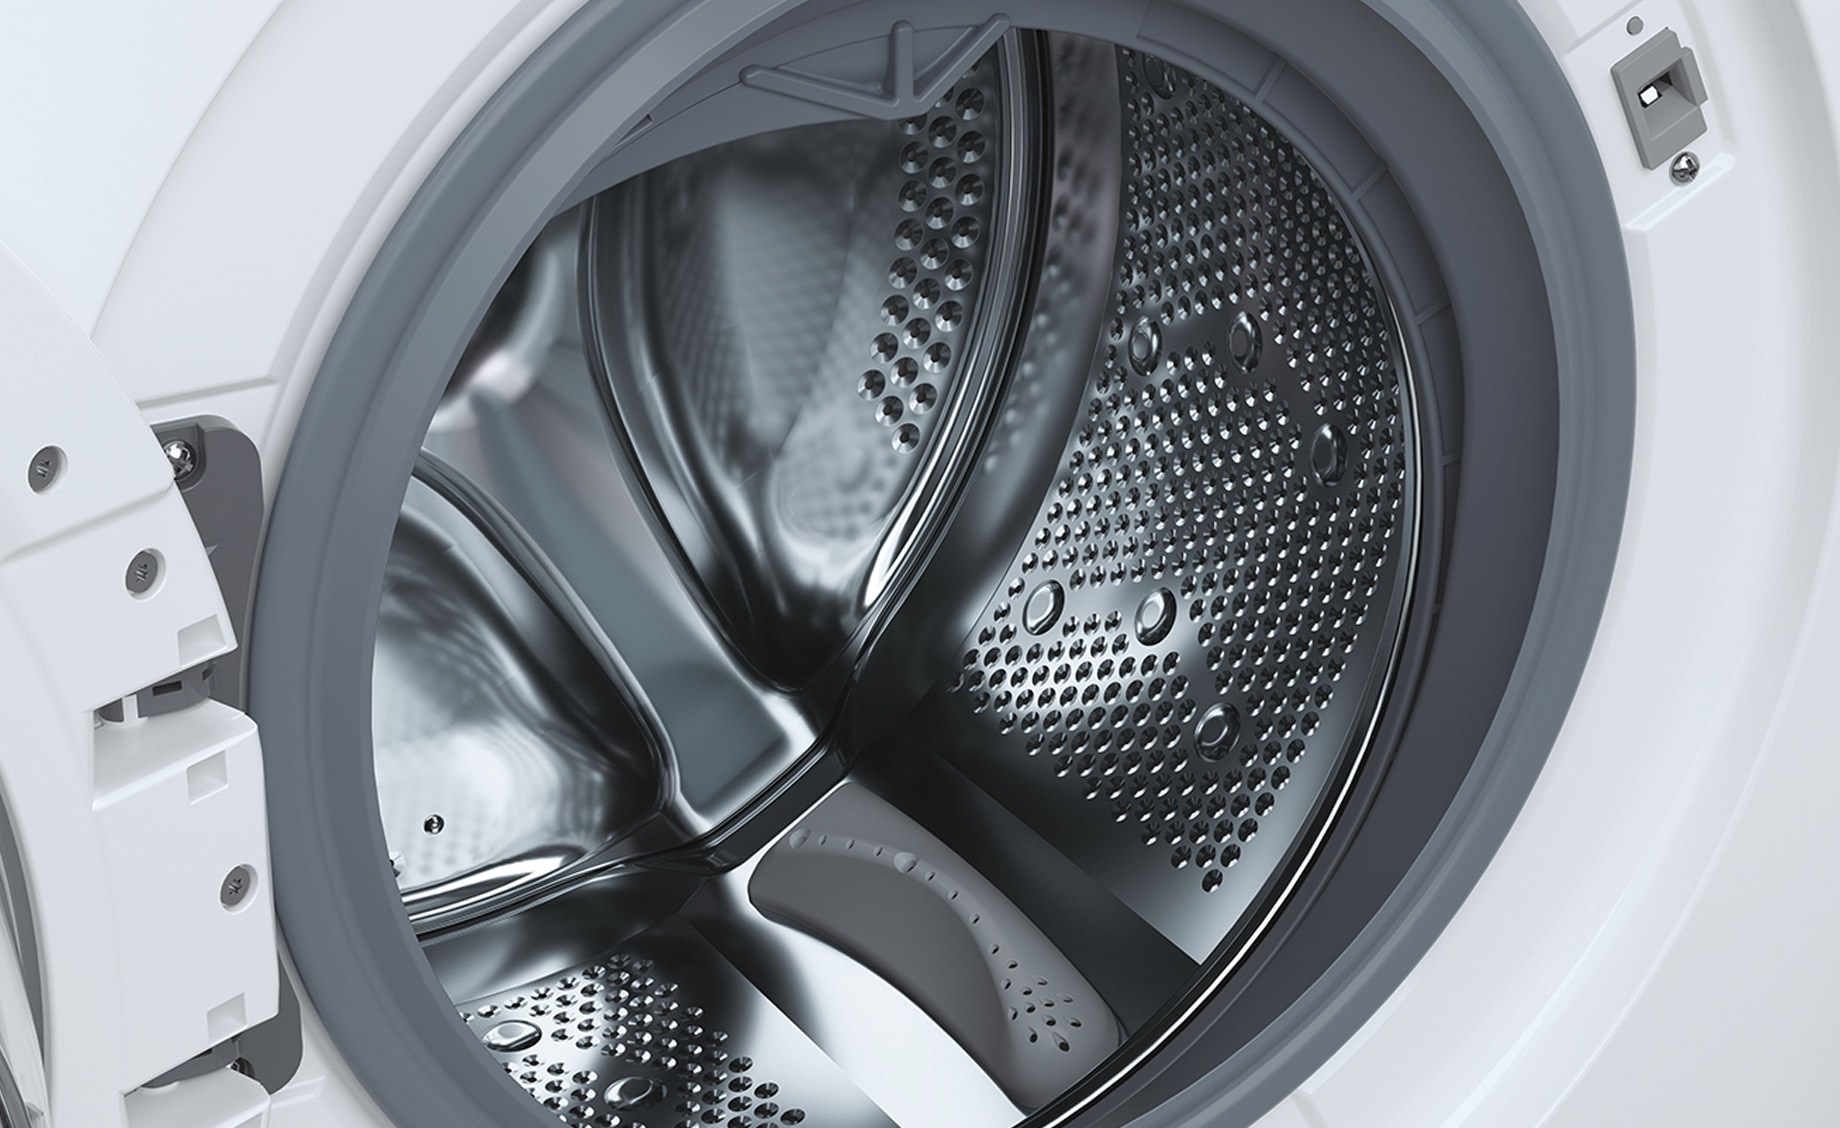 Candy CSOW 4965TWE/1-S mašina za pranje i sušenje veša